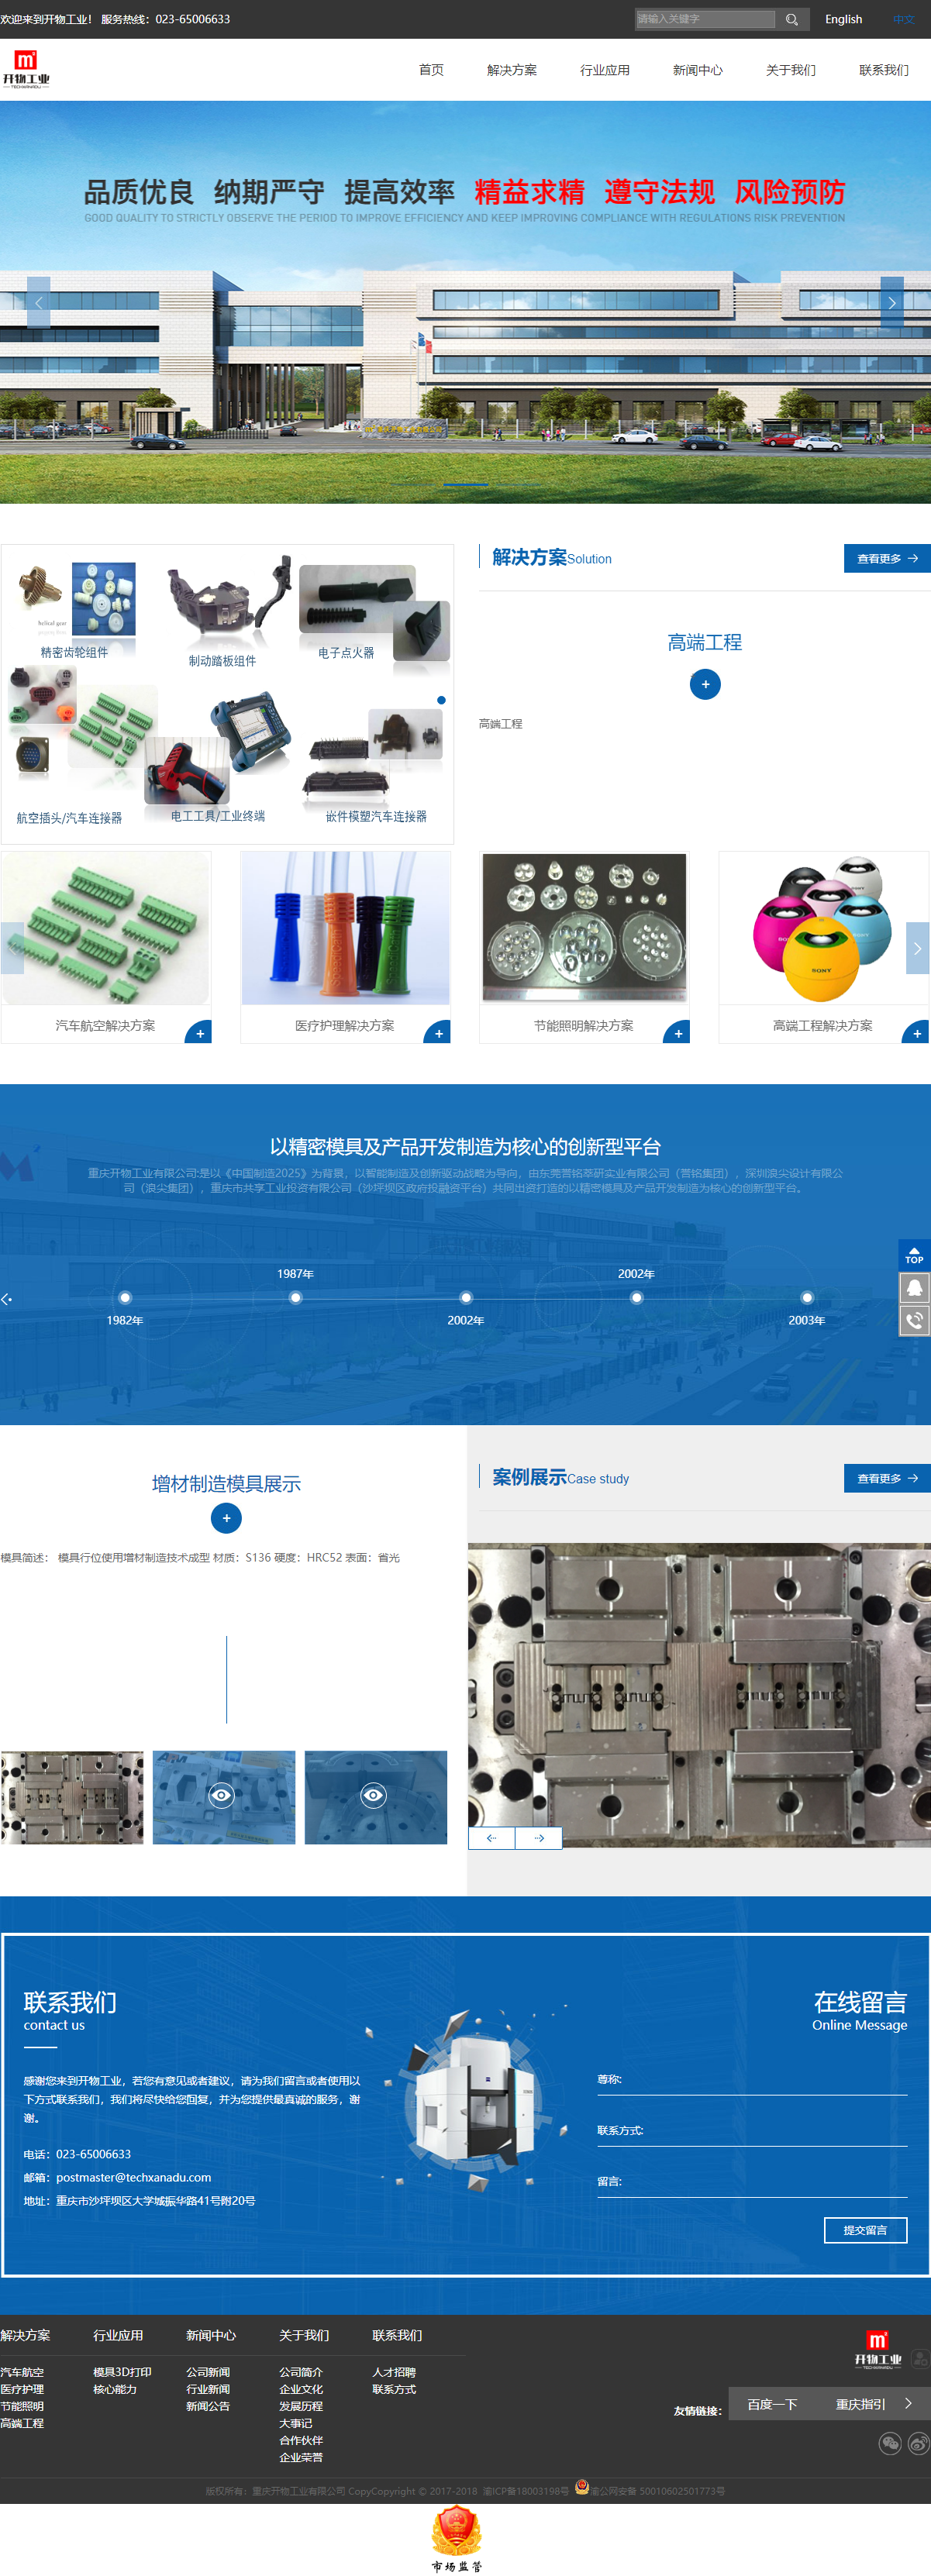 重庆开物工业有限公司网站案例